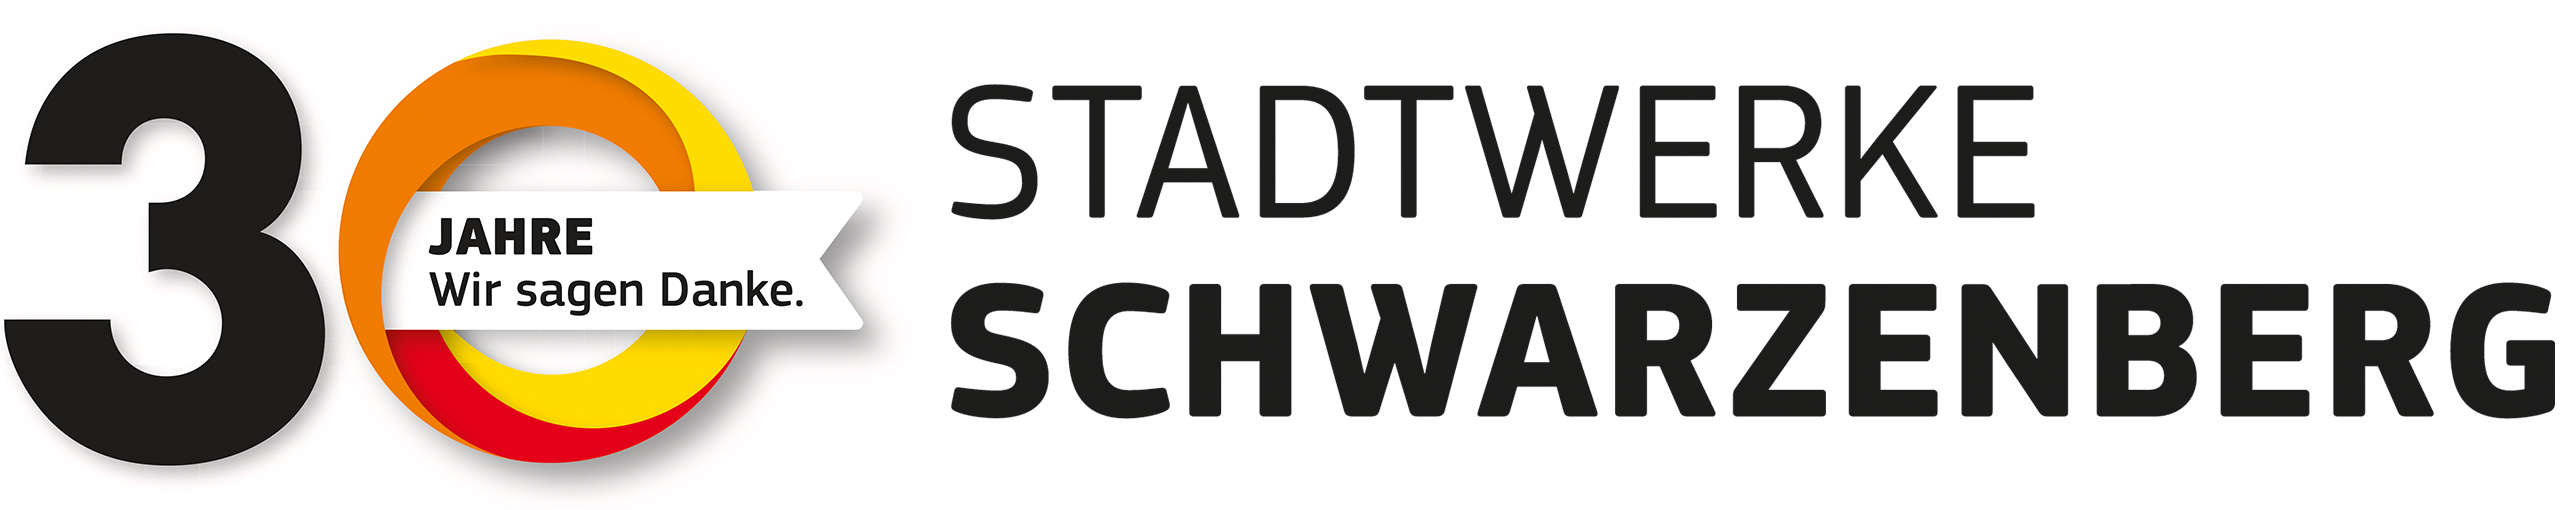 Logo 30 Jahre Stadtwerke Schwarzenberg